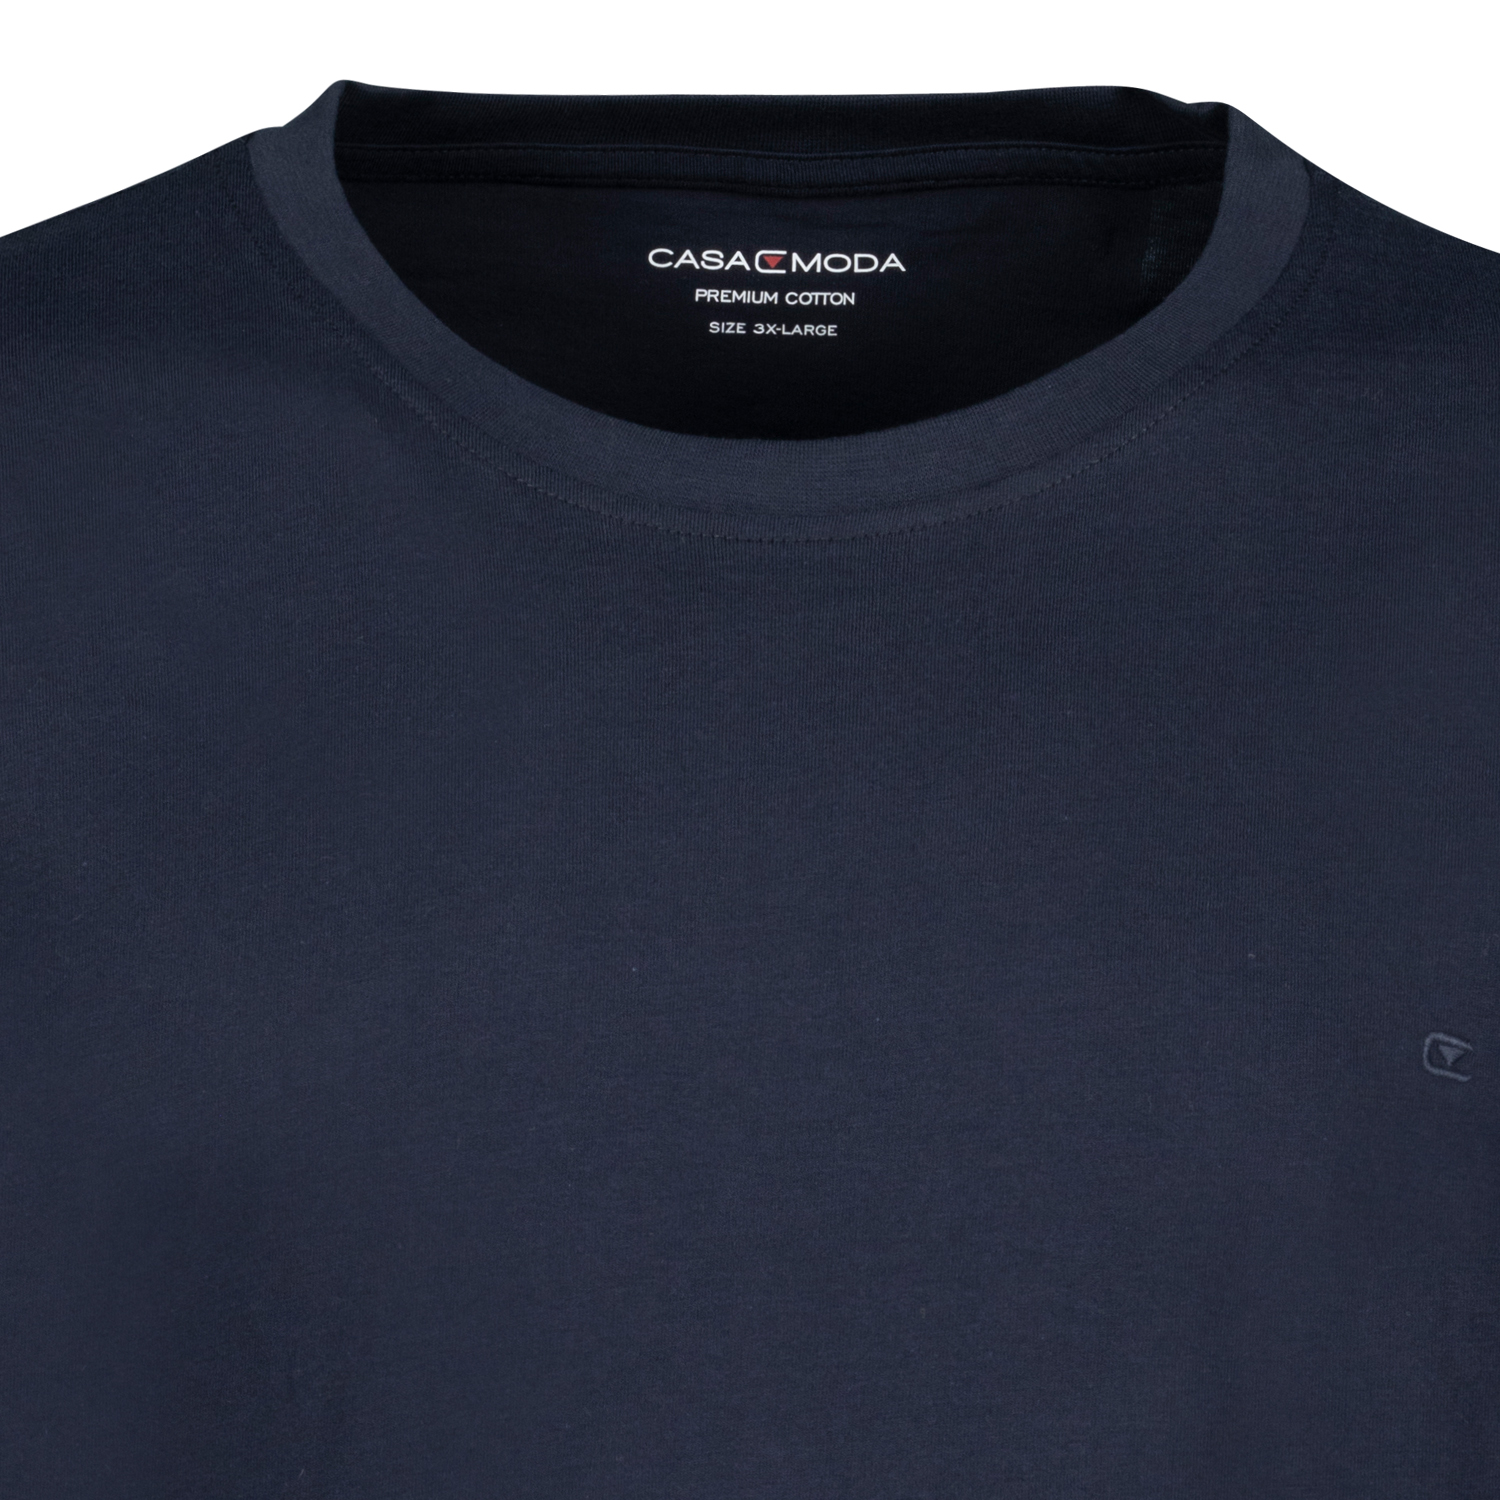 T-Shirt in dunkelblau 1/2 Arm von Casa Moda für Herren in Übergrößen bis 6XL